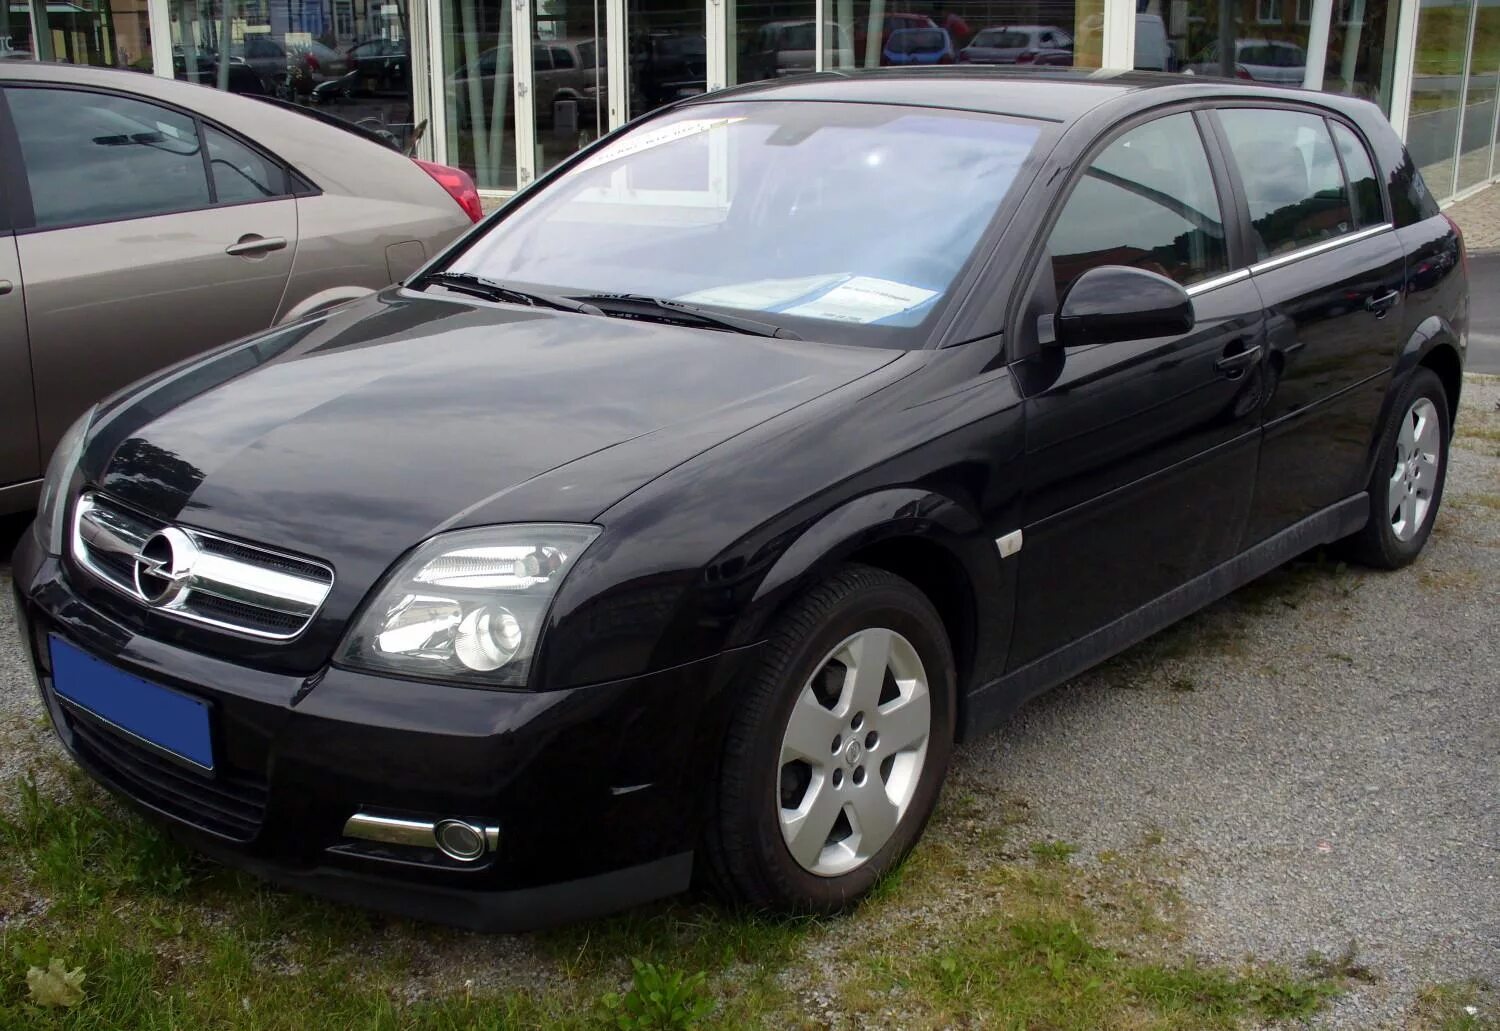 Opel Signum 2.2. Opel Signum 2008. Опель Сигнум 2.2 2007. Opel Signum 2.2 бензин. Opel ii